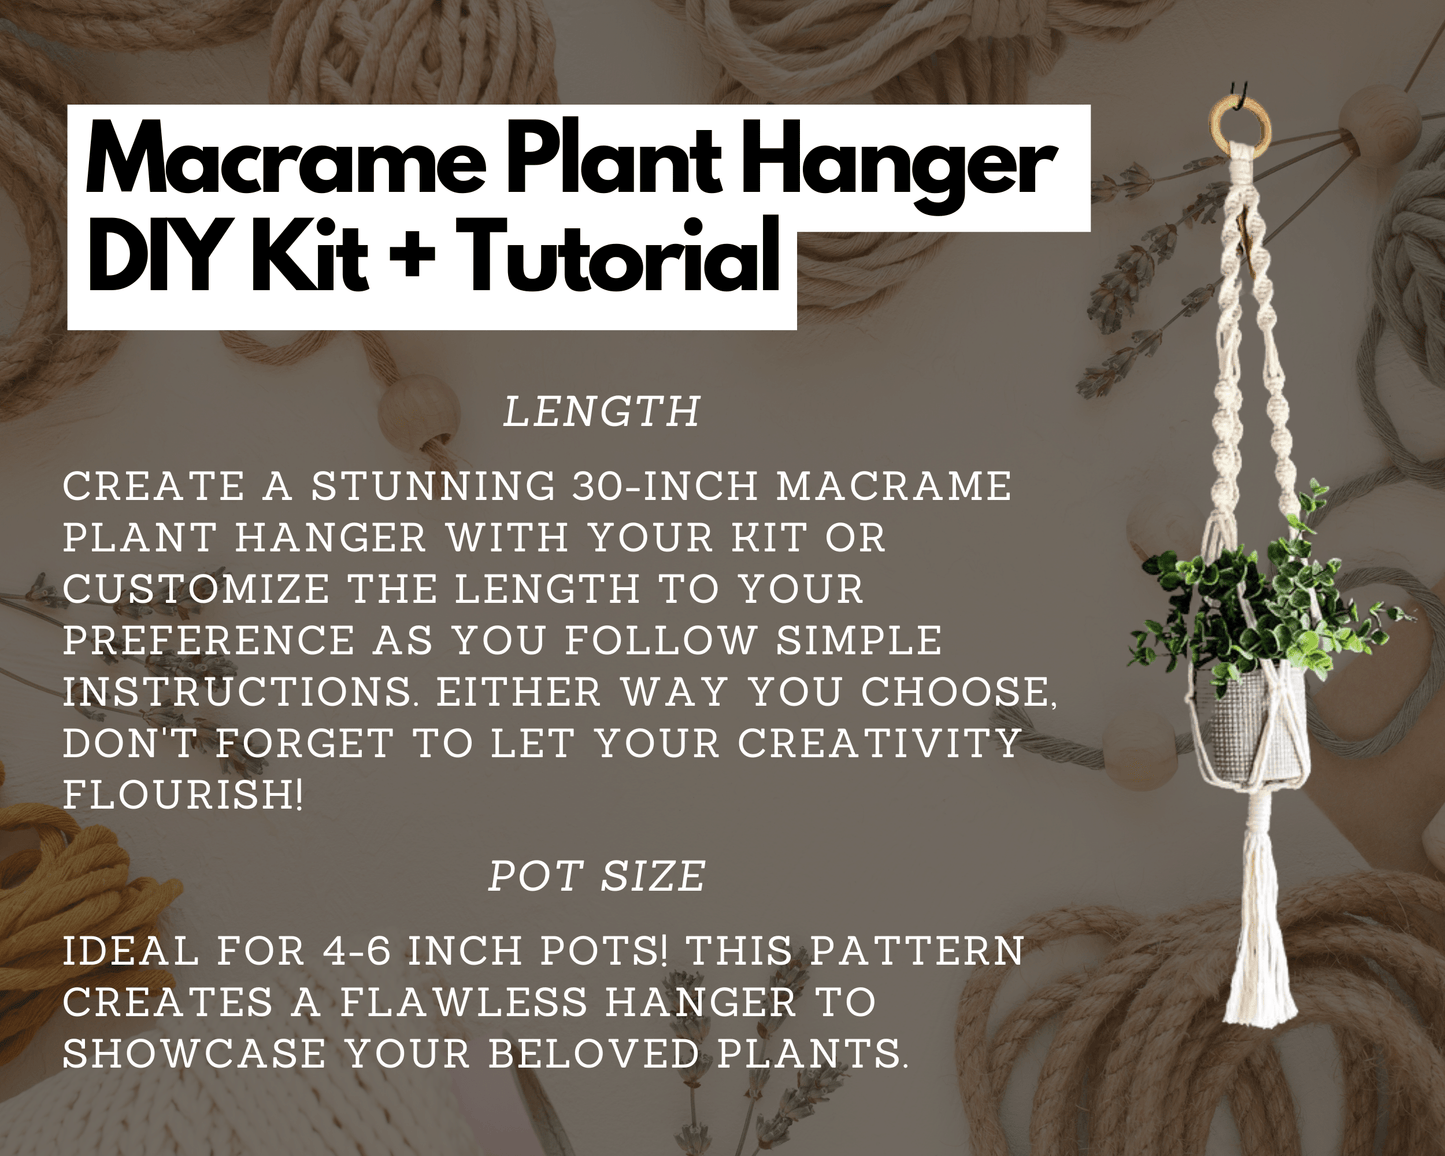 Macrame Plant Hanger DIY Kit with Pattern